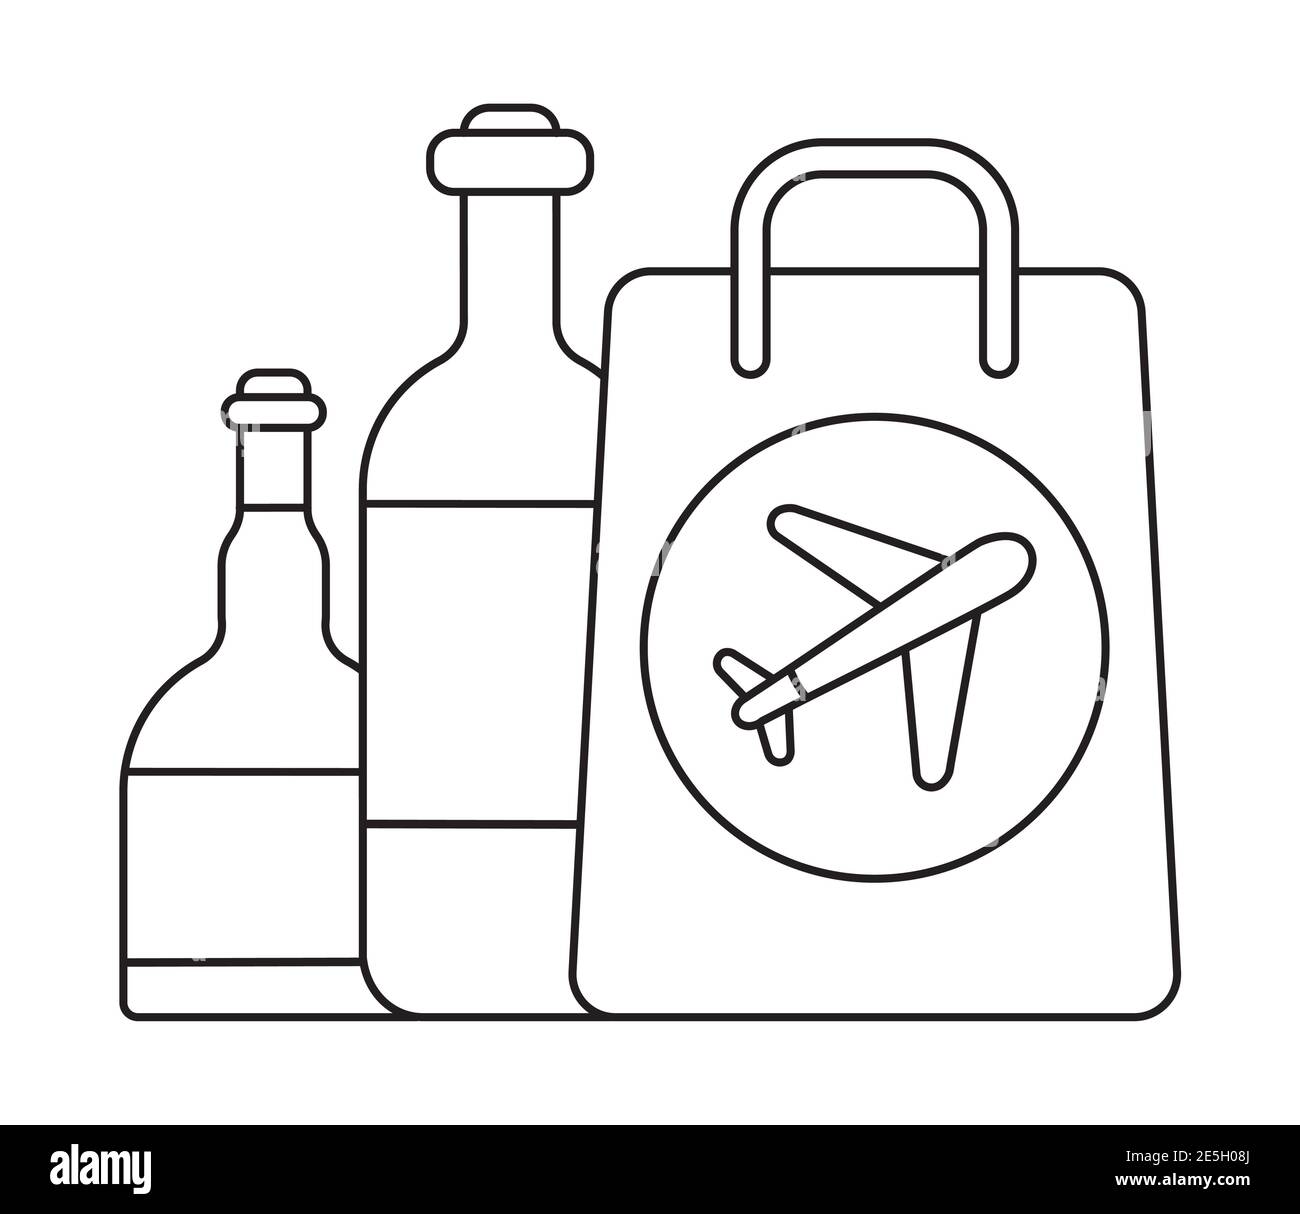 Vecteur d'icône hors taxes en forme de contour. Le sac avec flacon est illustré. La compagnie aérienne se trouve sur le côté du sac. Illustration de Vecteur